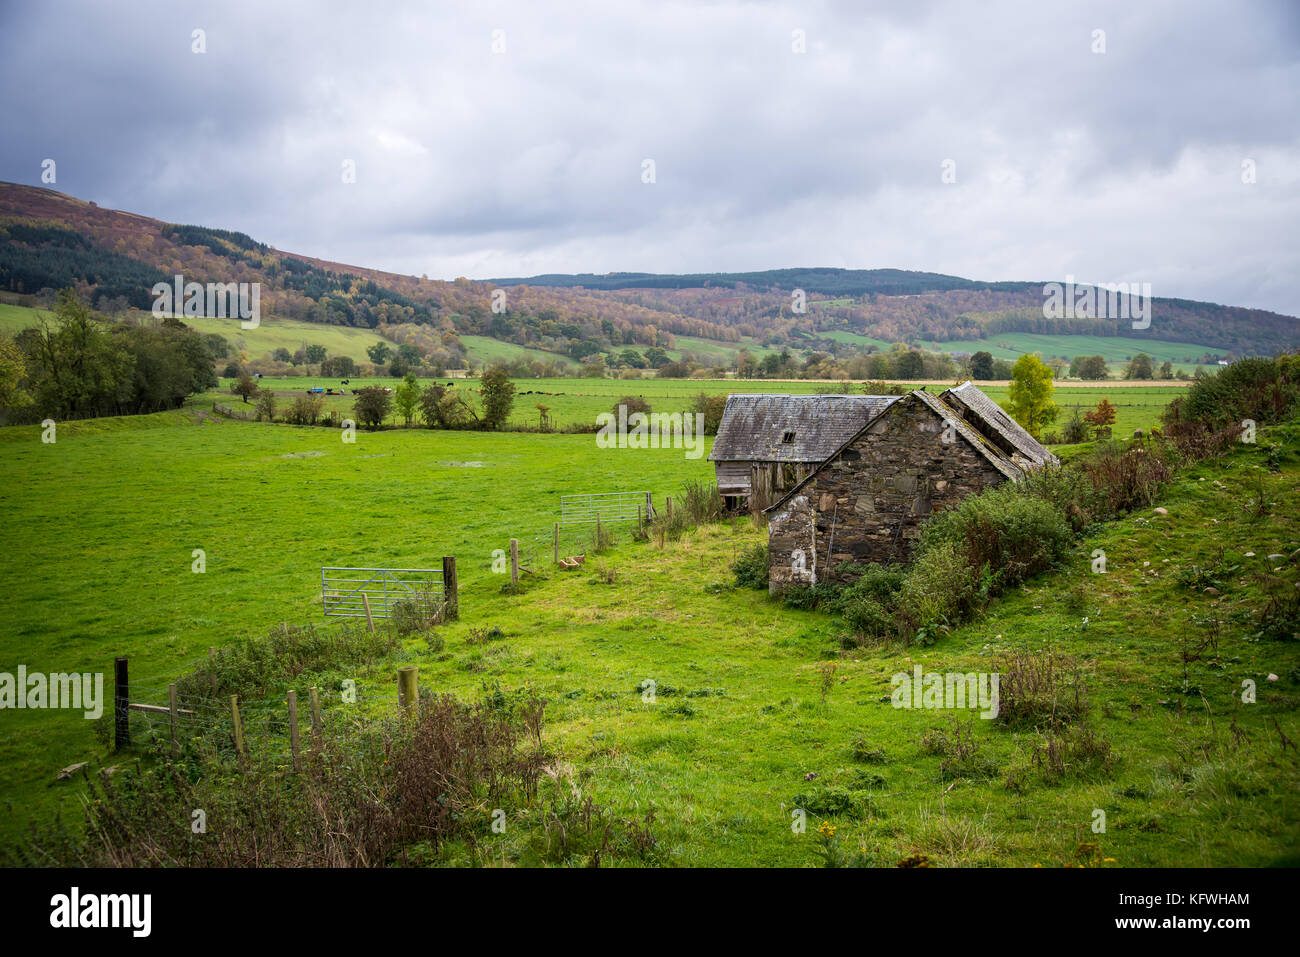 Una arruinada granja en Escocia, edificio abandonado Foto de stock